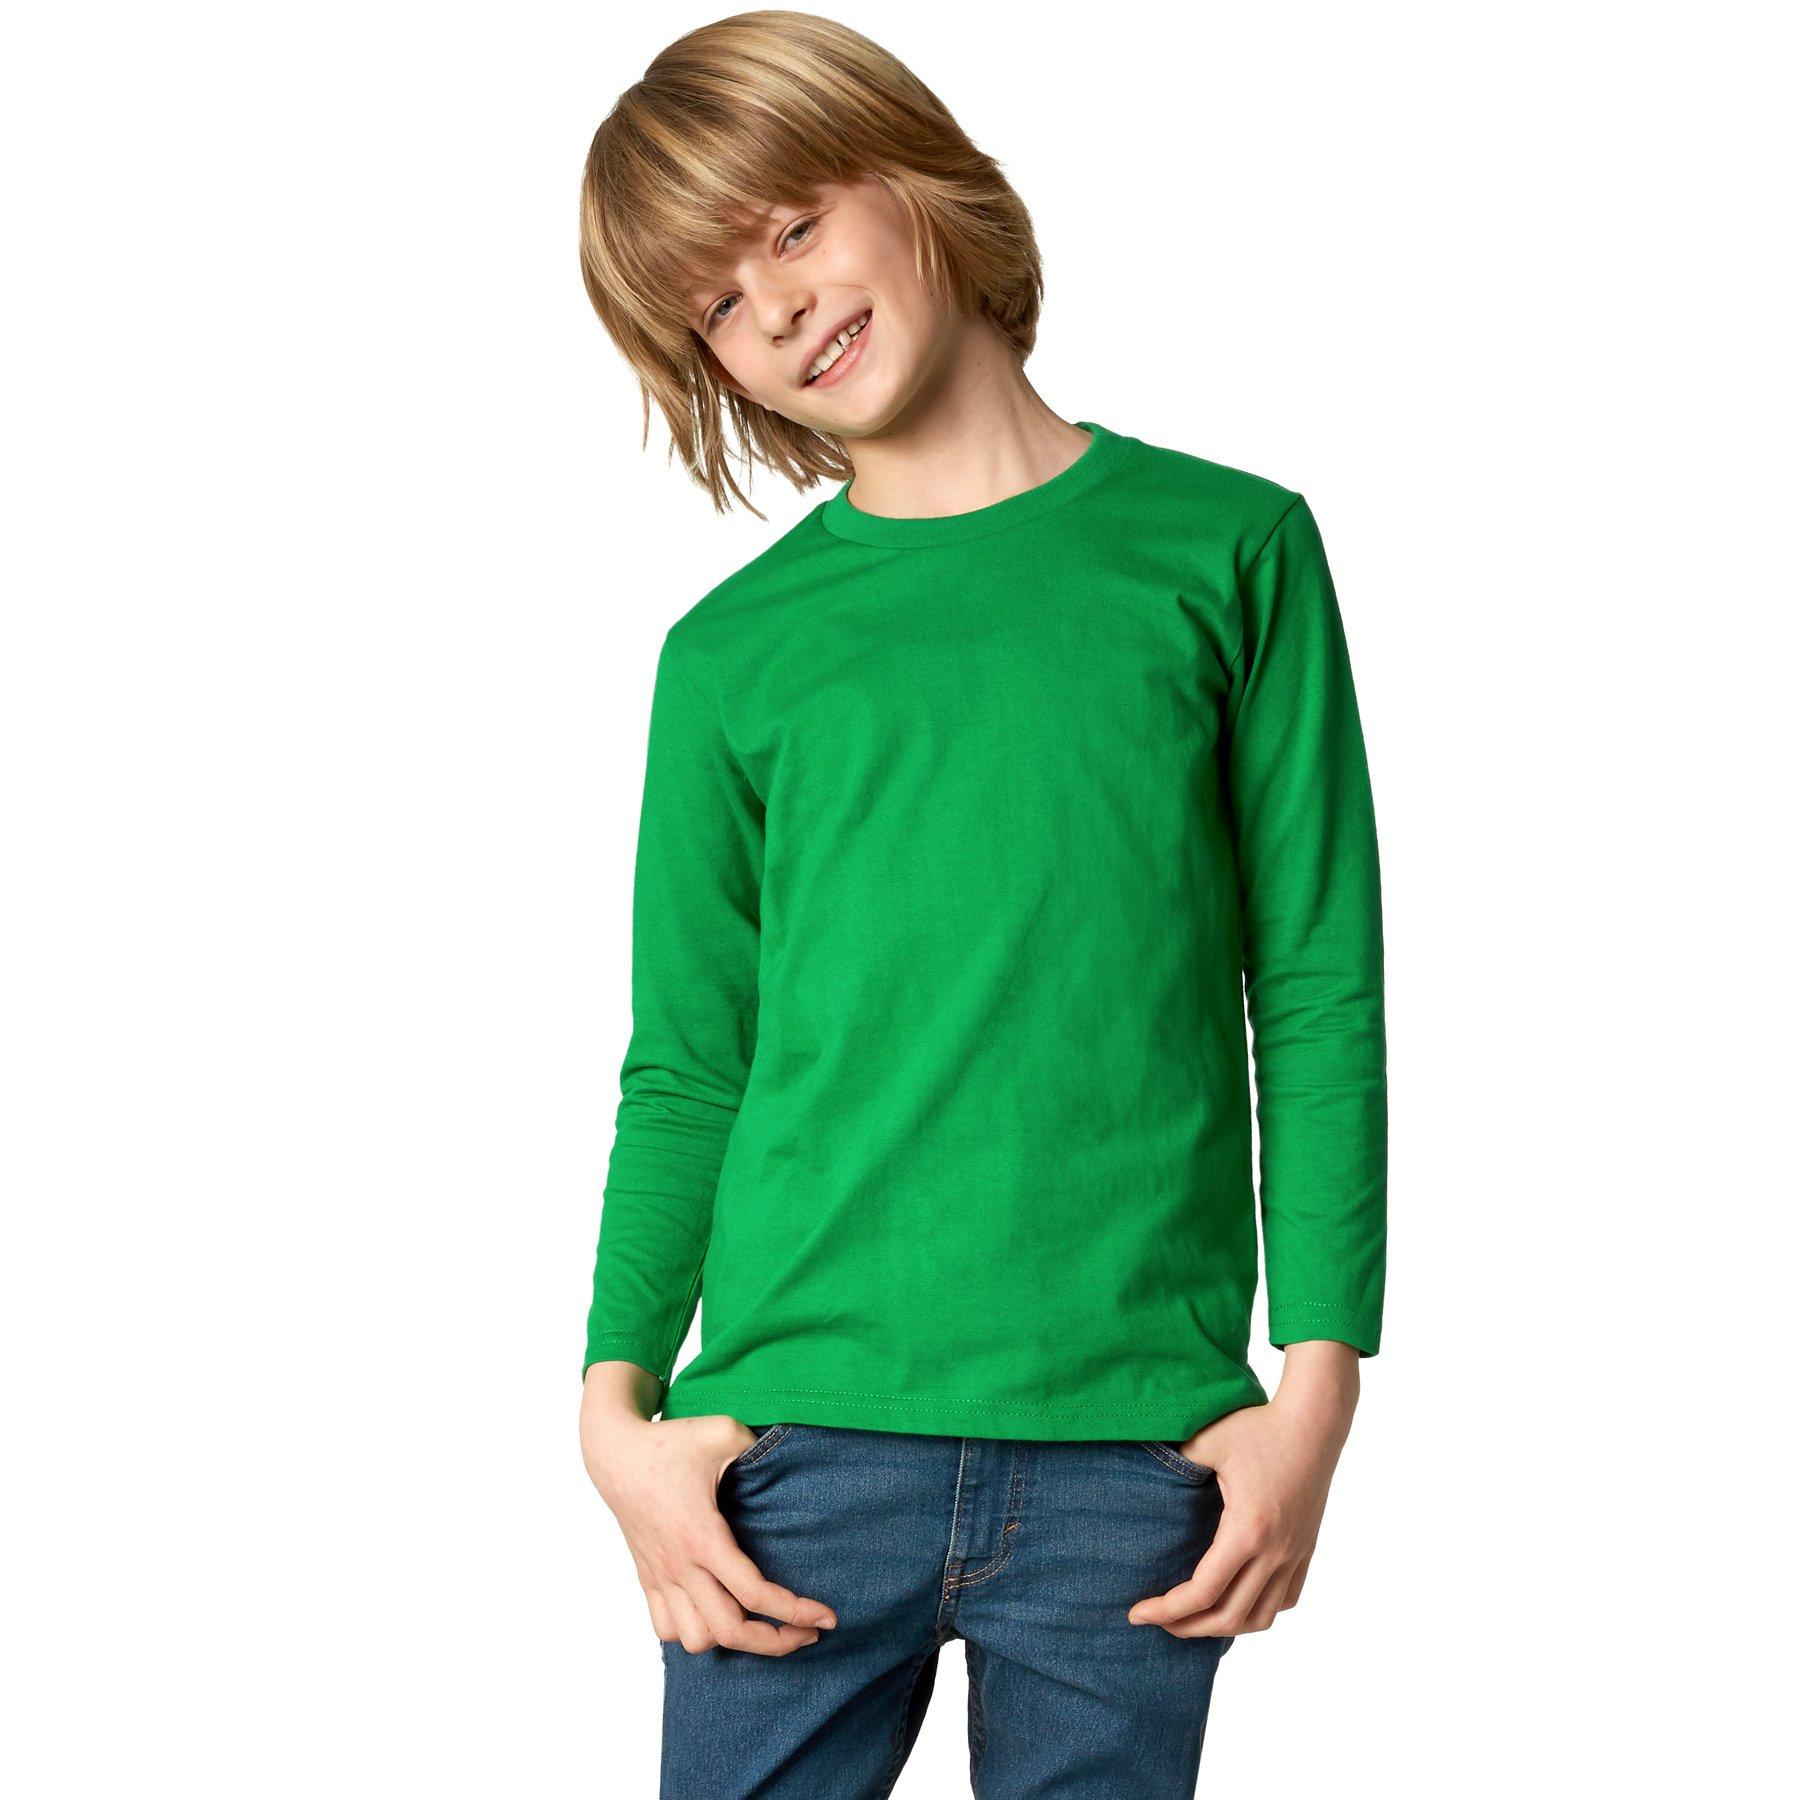 Langarm-shirt Kinder Jungen Grün 116 von Tectake